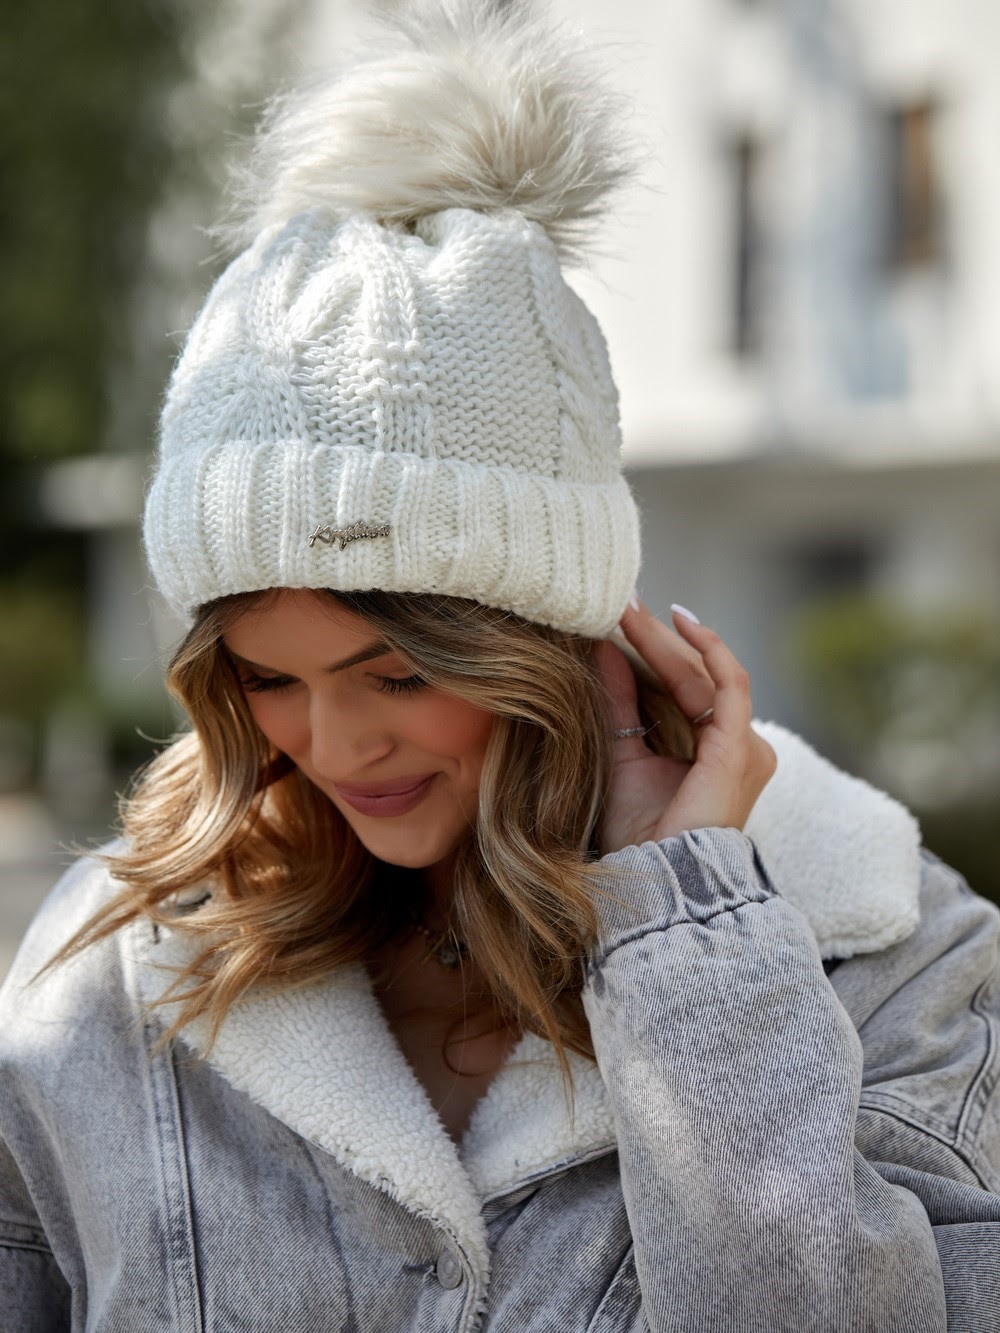 Cream winter cap